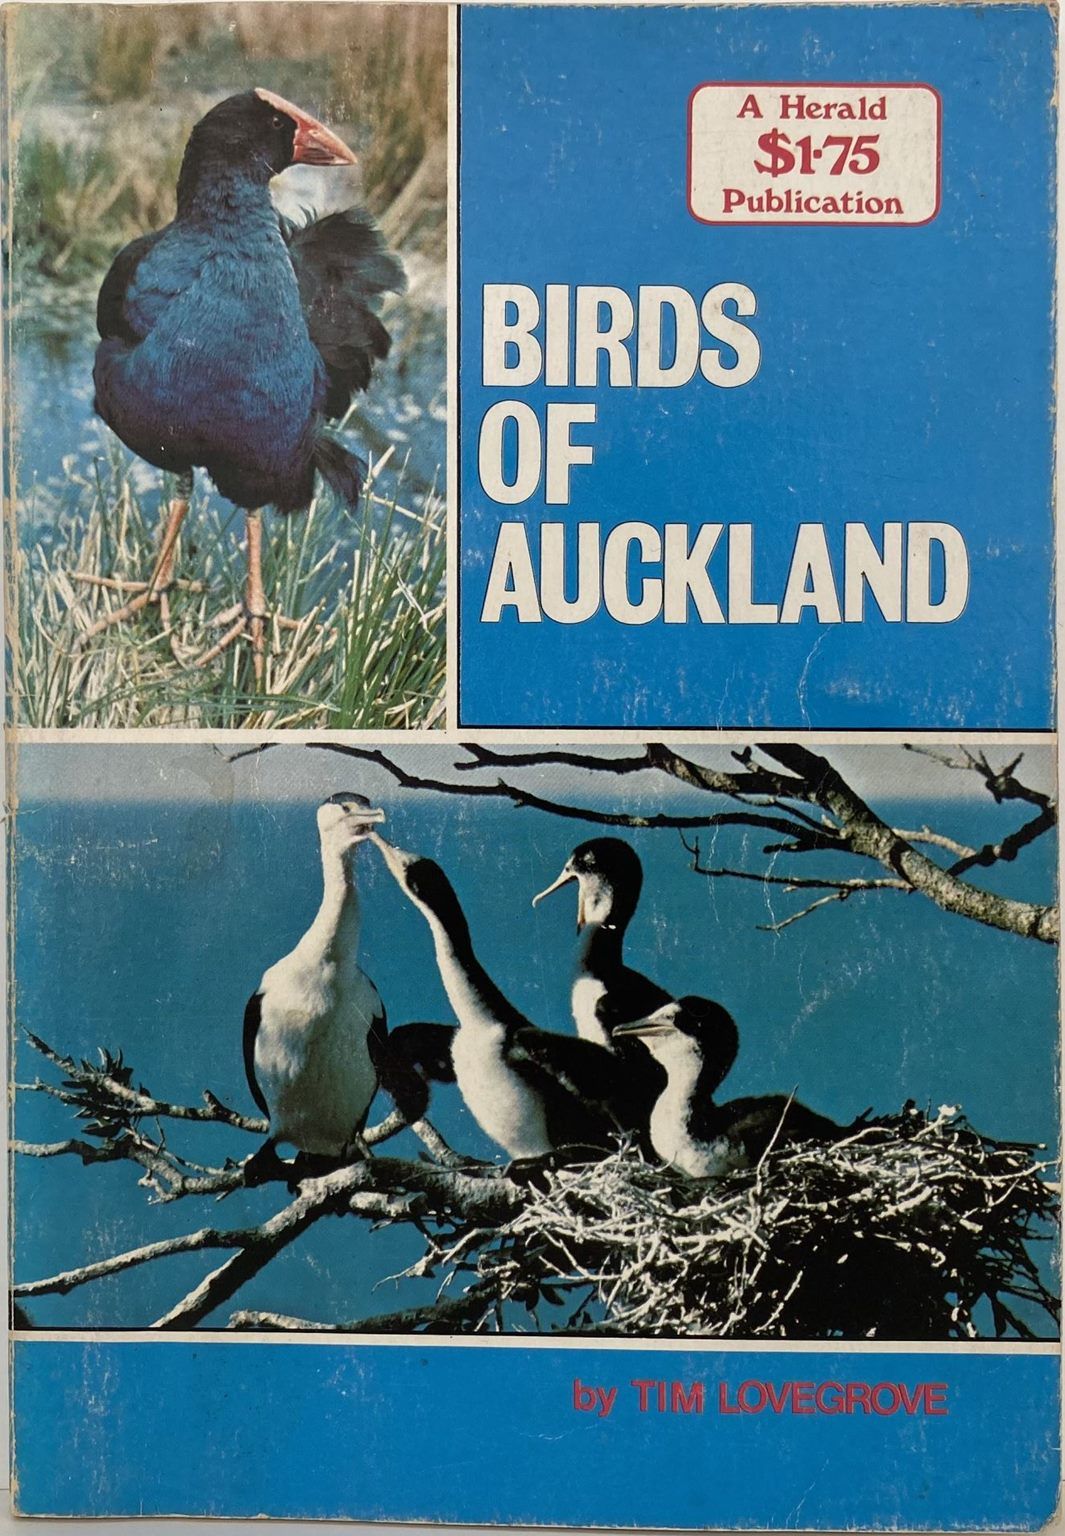 BIRDS OF AUCKLAND